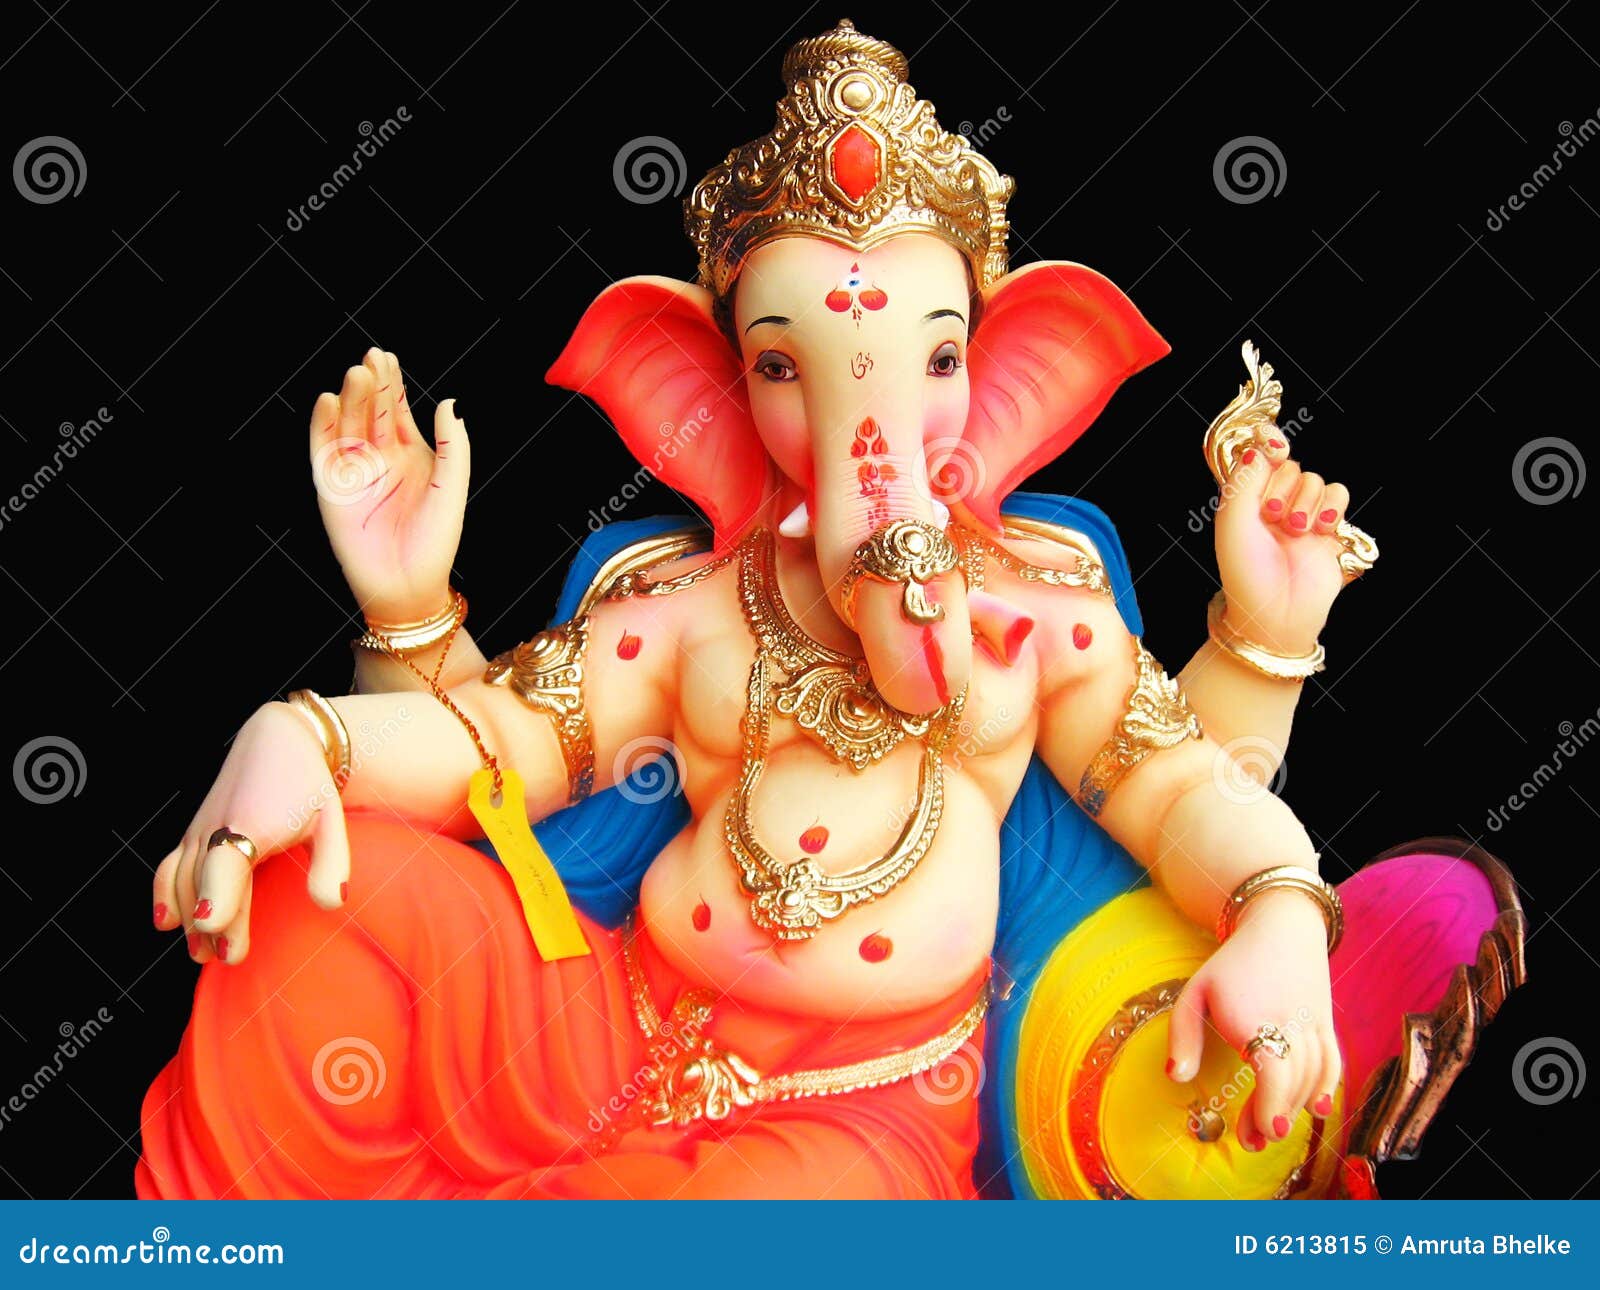 Elegant Lord Ganesha stock image. Image of sitting, decor - 6213815